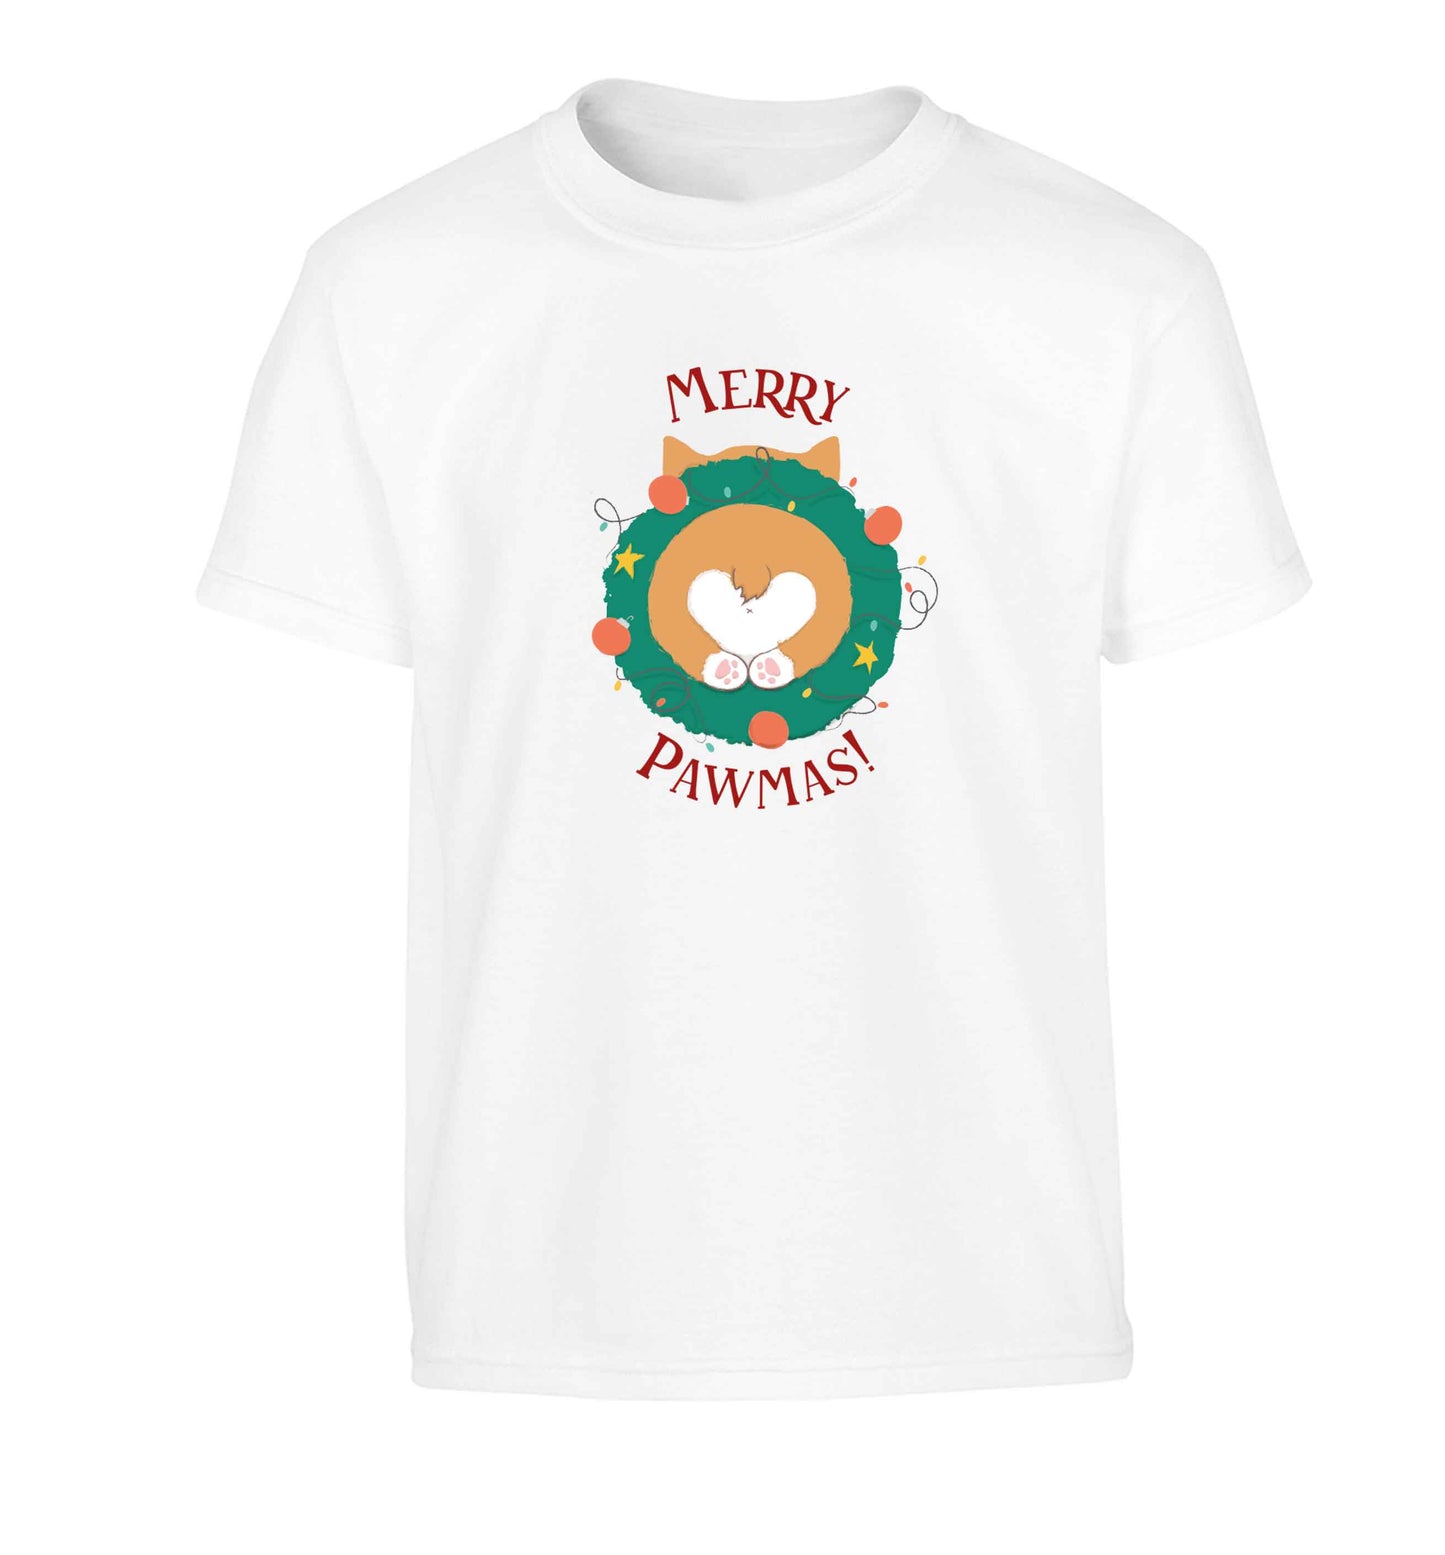 Merry Pawmas Children's white Tshirt 12-13 Years